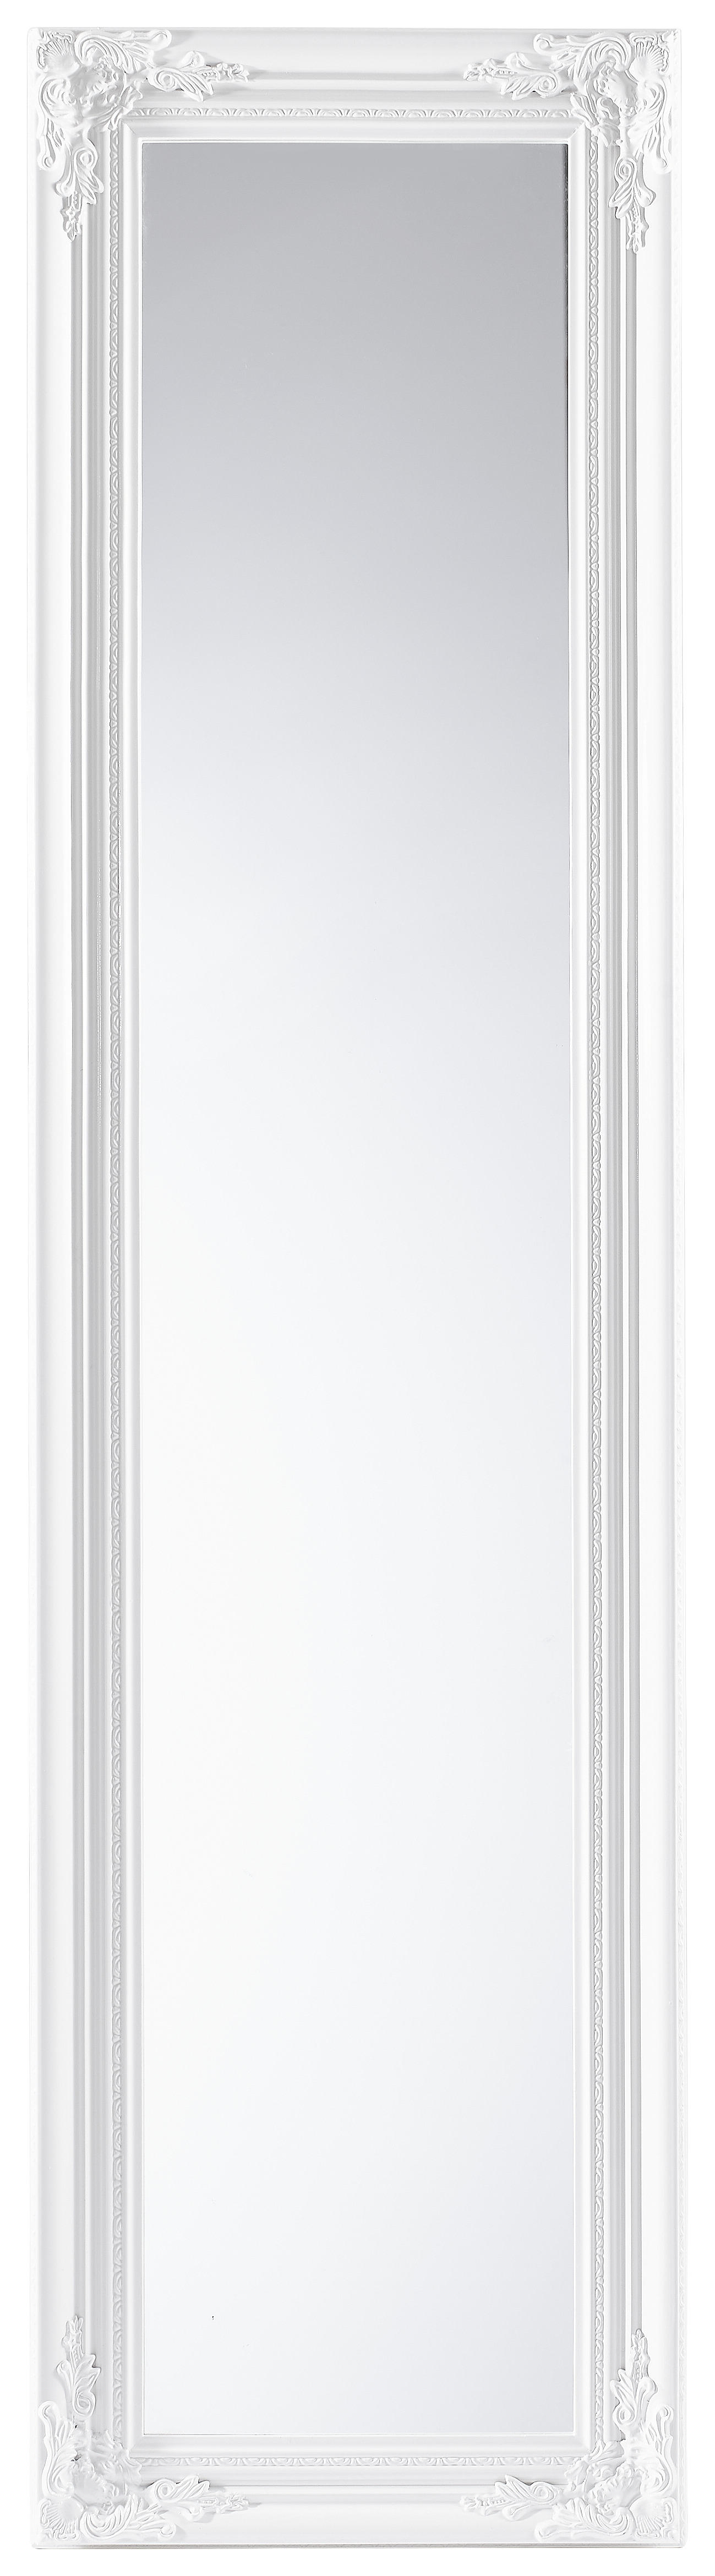 STANDSPIEGEL 44/168/5 cm  - Weiß Hochglanz/Weiß, LIFESTYLE, Glas/Holz (44/168/5cm) - Carryhome